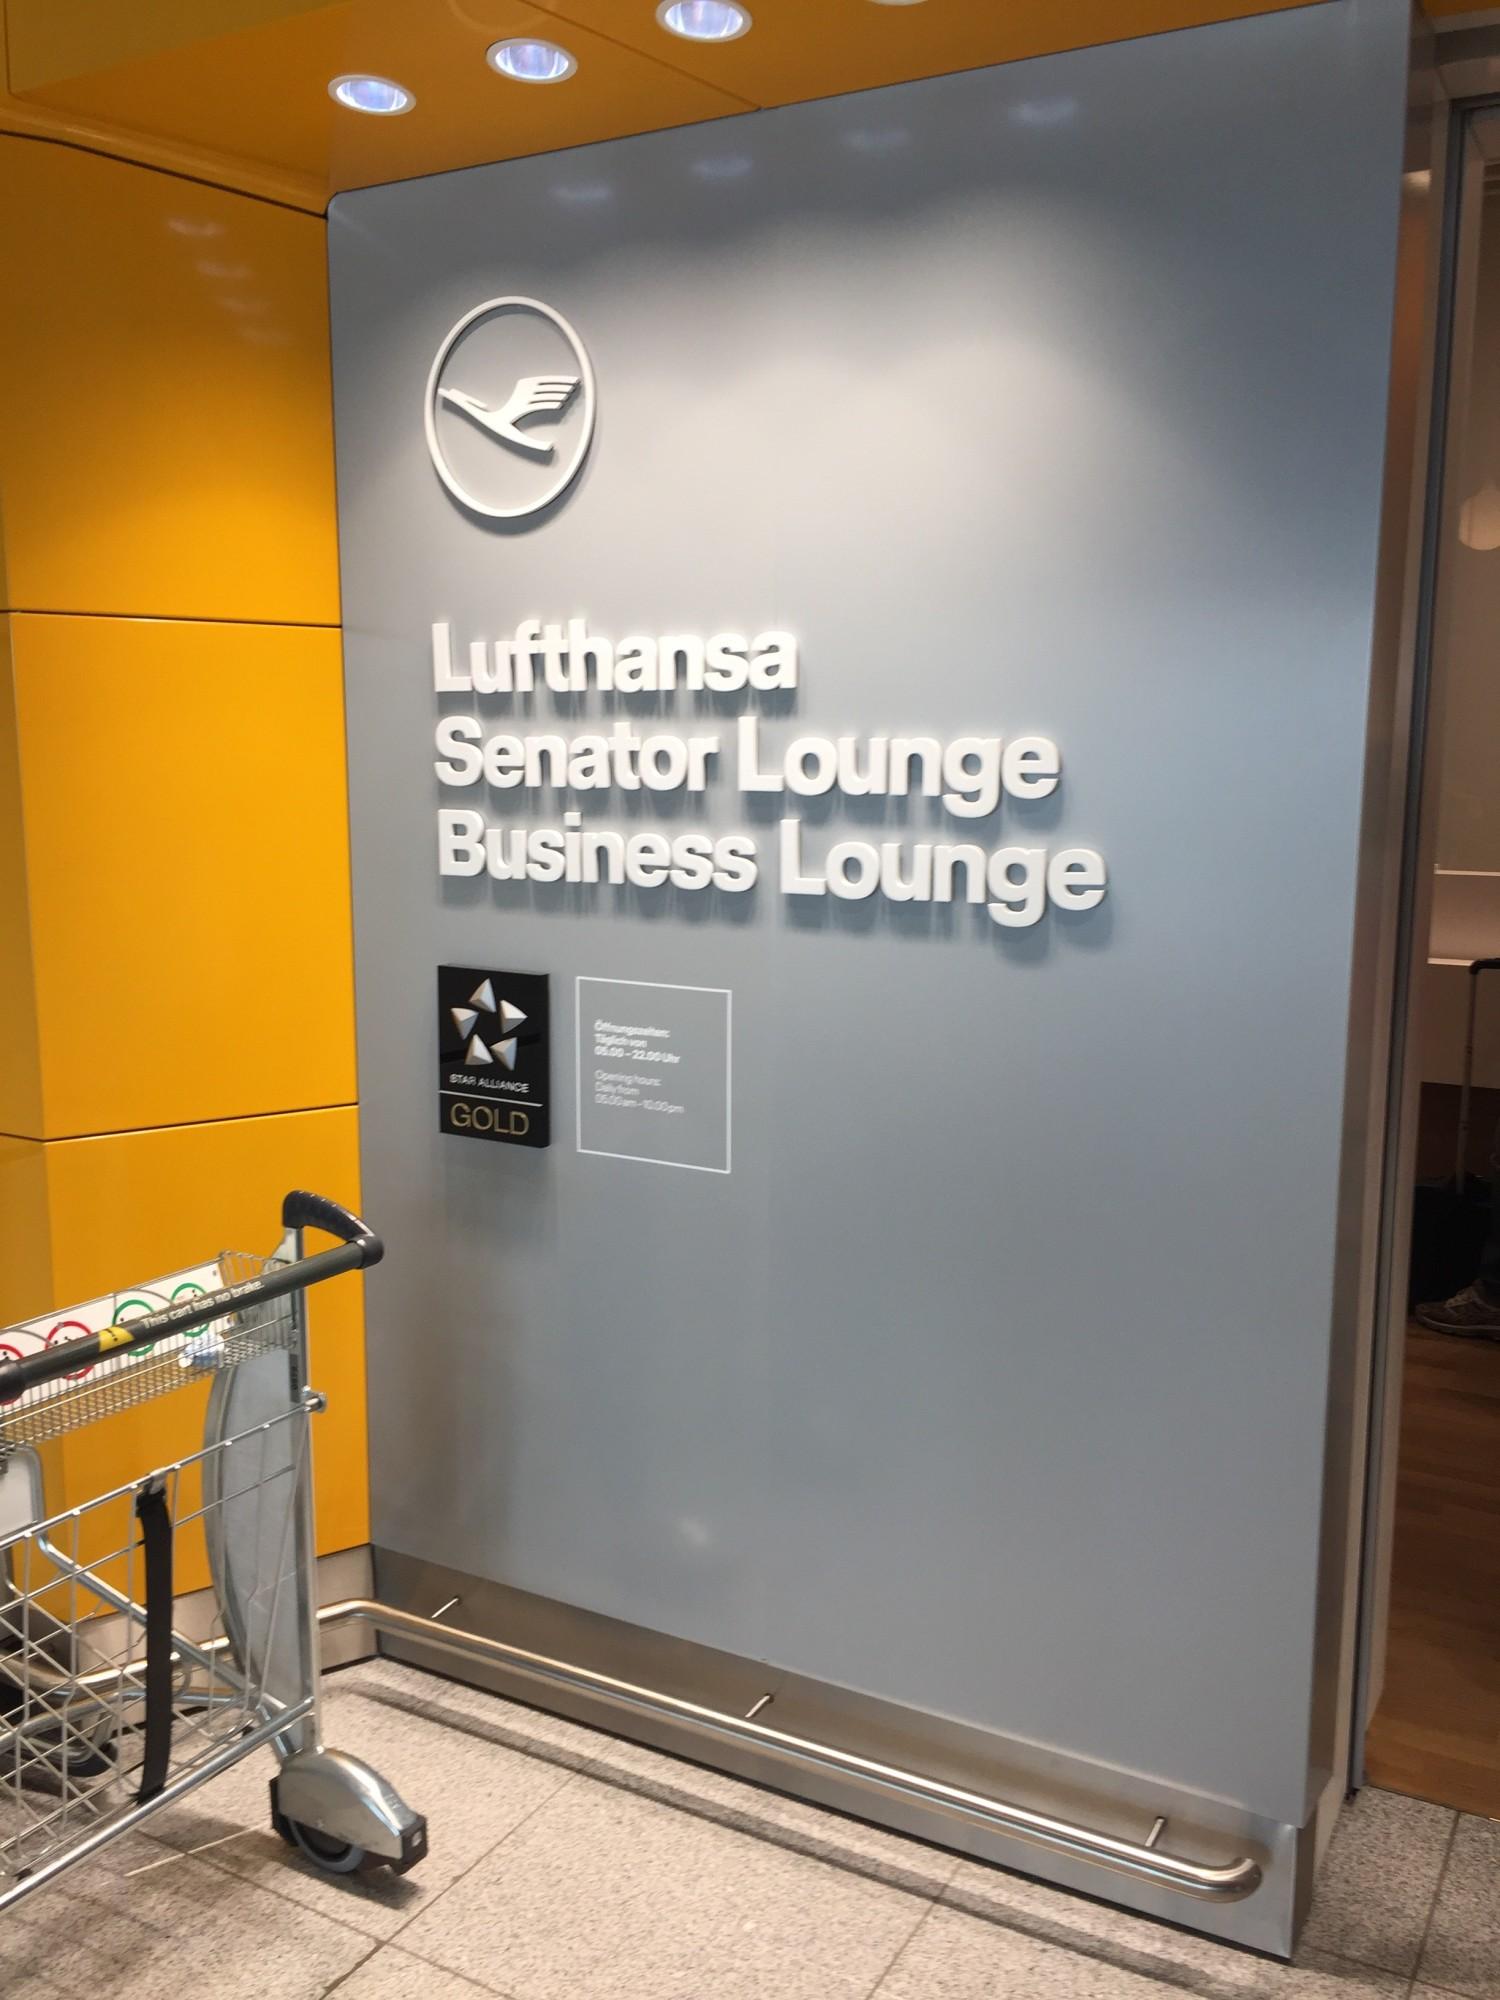 Lufthansa Business Lounge (Schengen) image 13 of 13